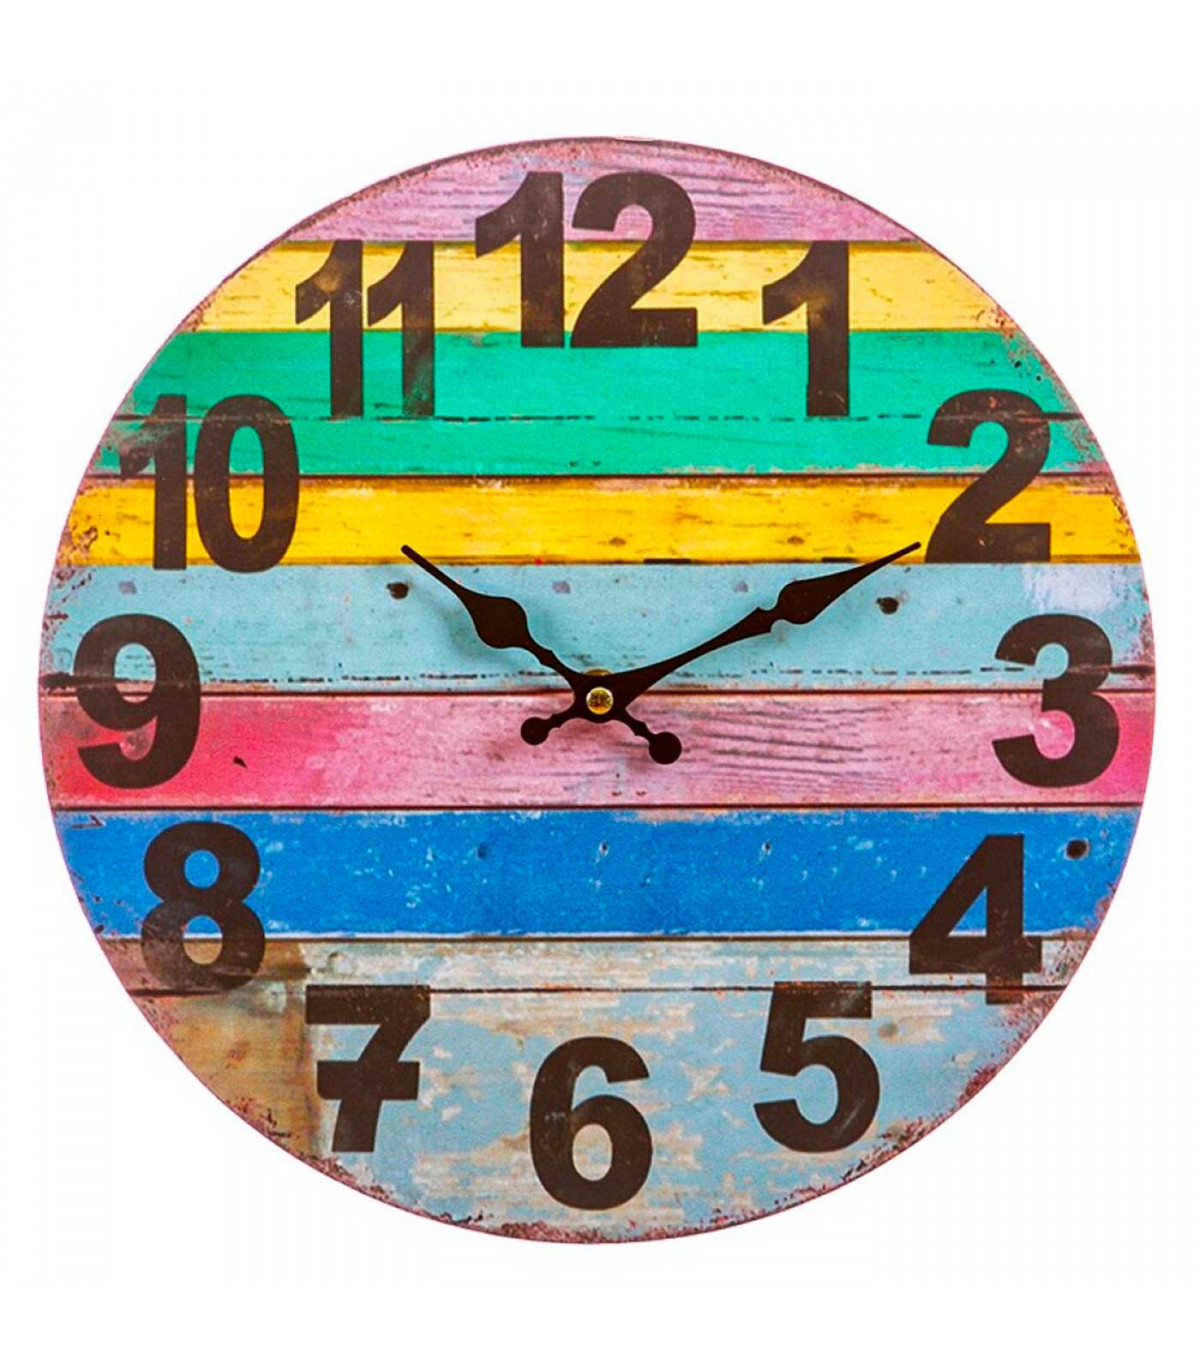 Reloj de Pared Reloj de Diseño Reloj Decorativo Salón Madera Retro